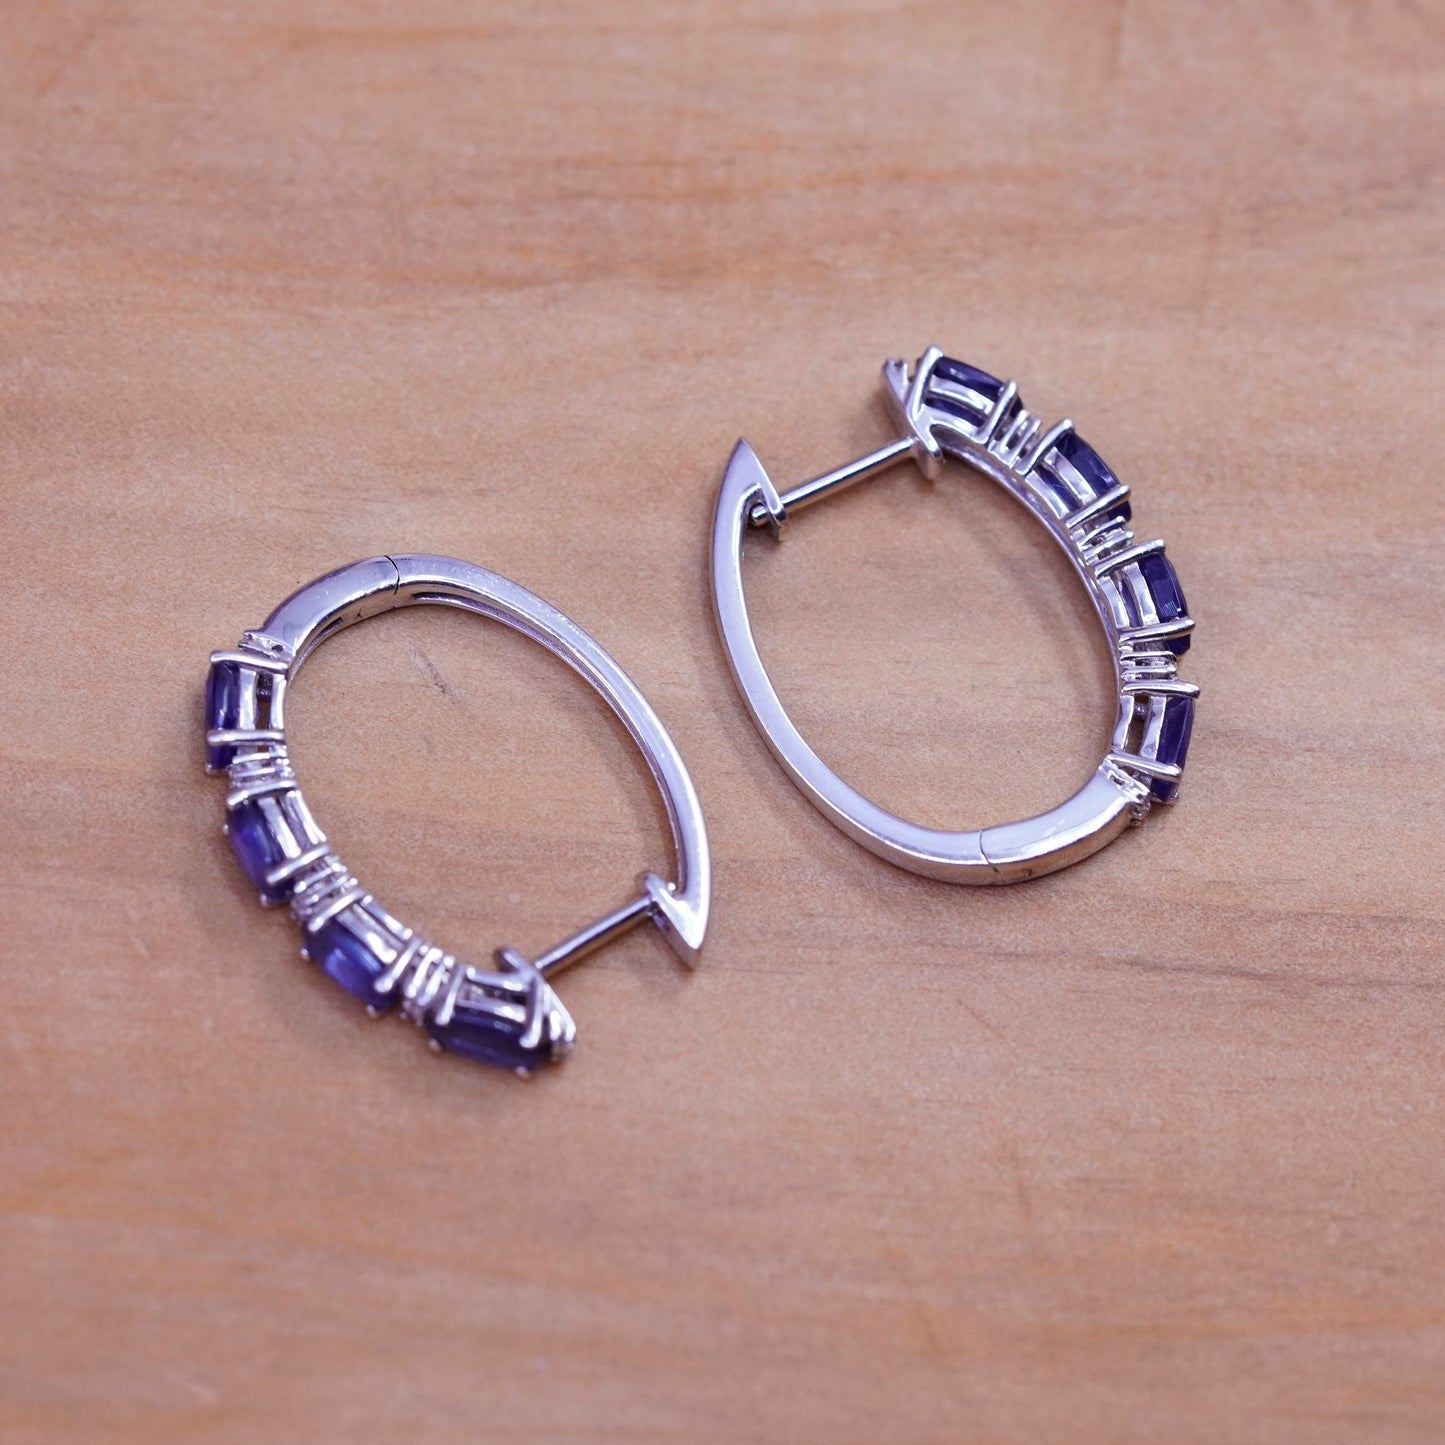 1”, vintage Sterling silver hoop earrings, 925 hoops with amethyst